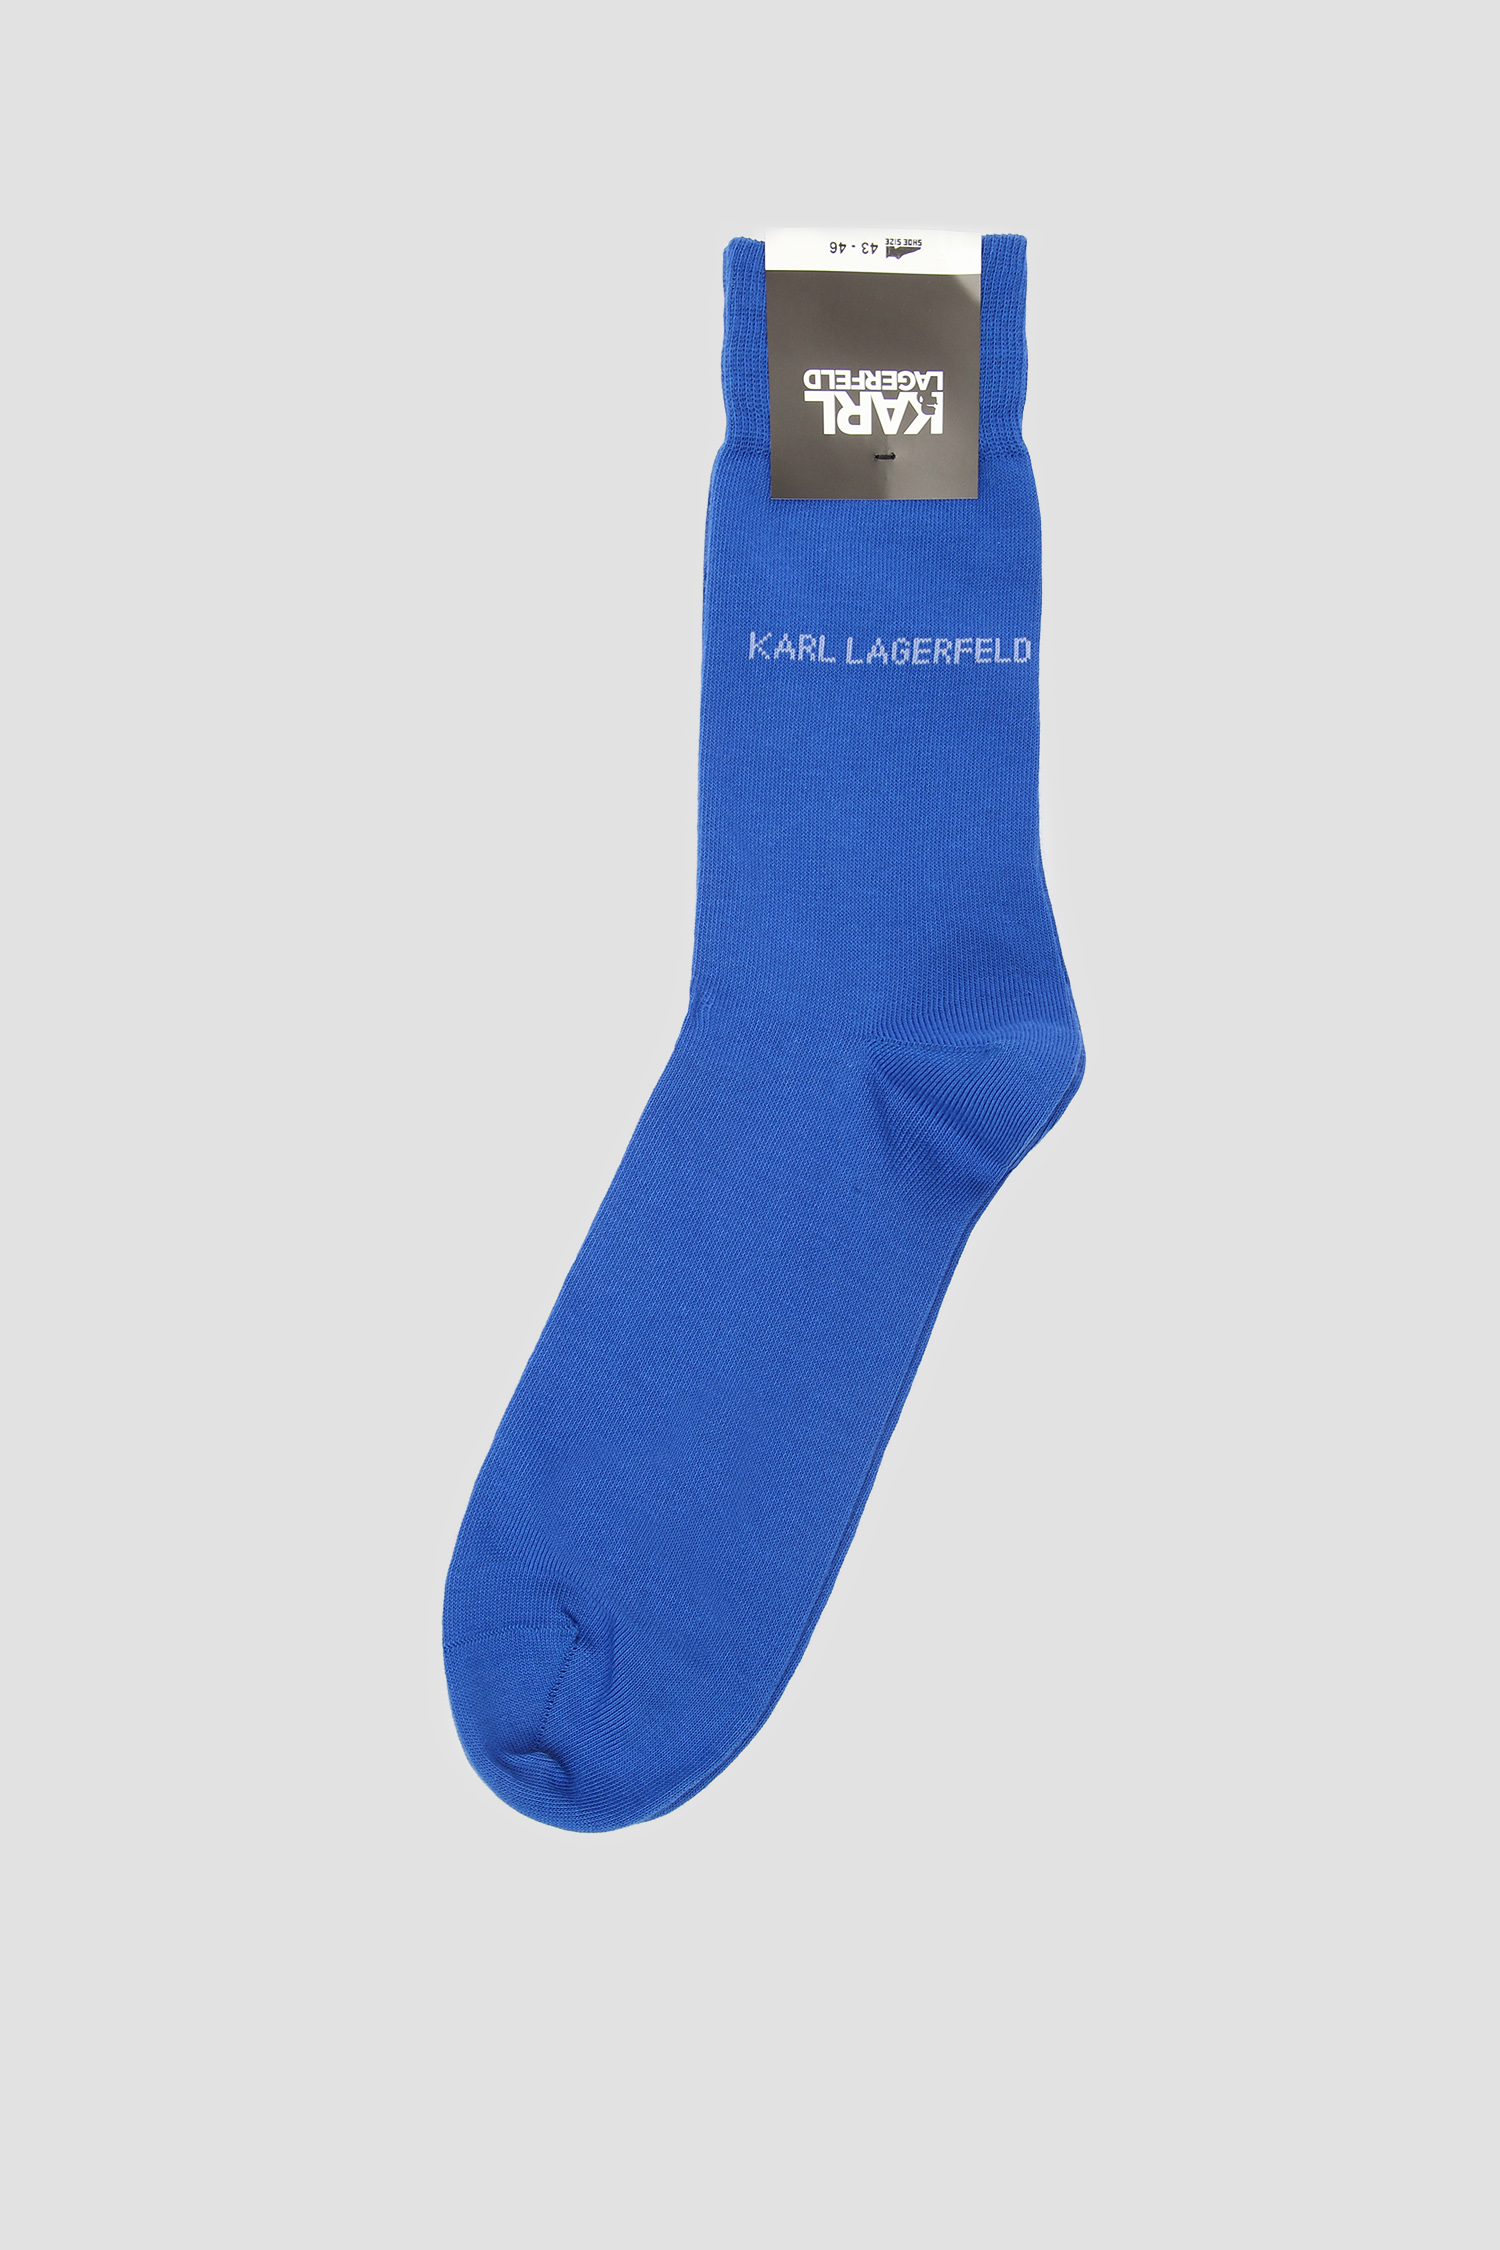 Чоловічі сині шкарпетки Karl Lagerfeld 591101.805501;650